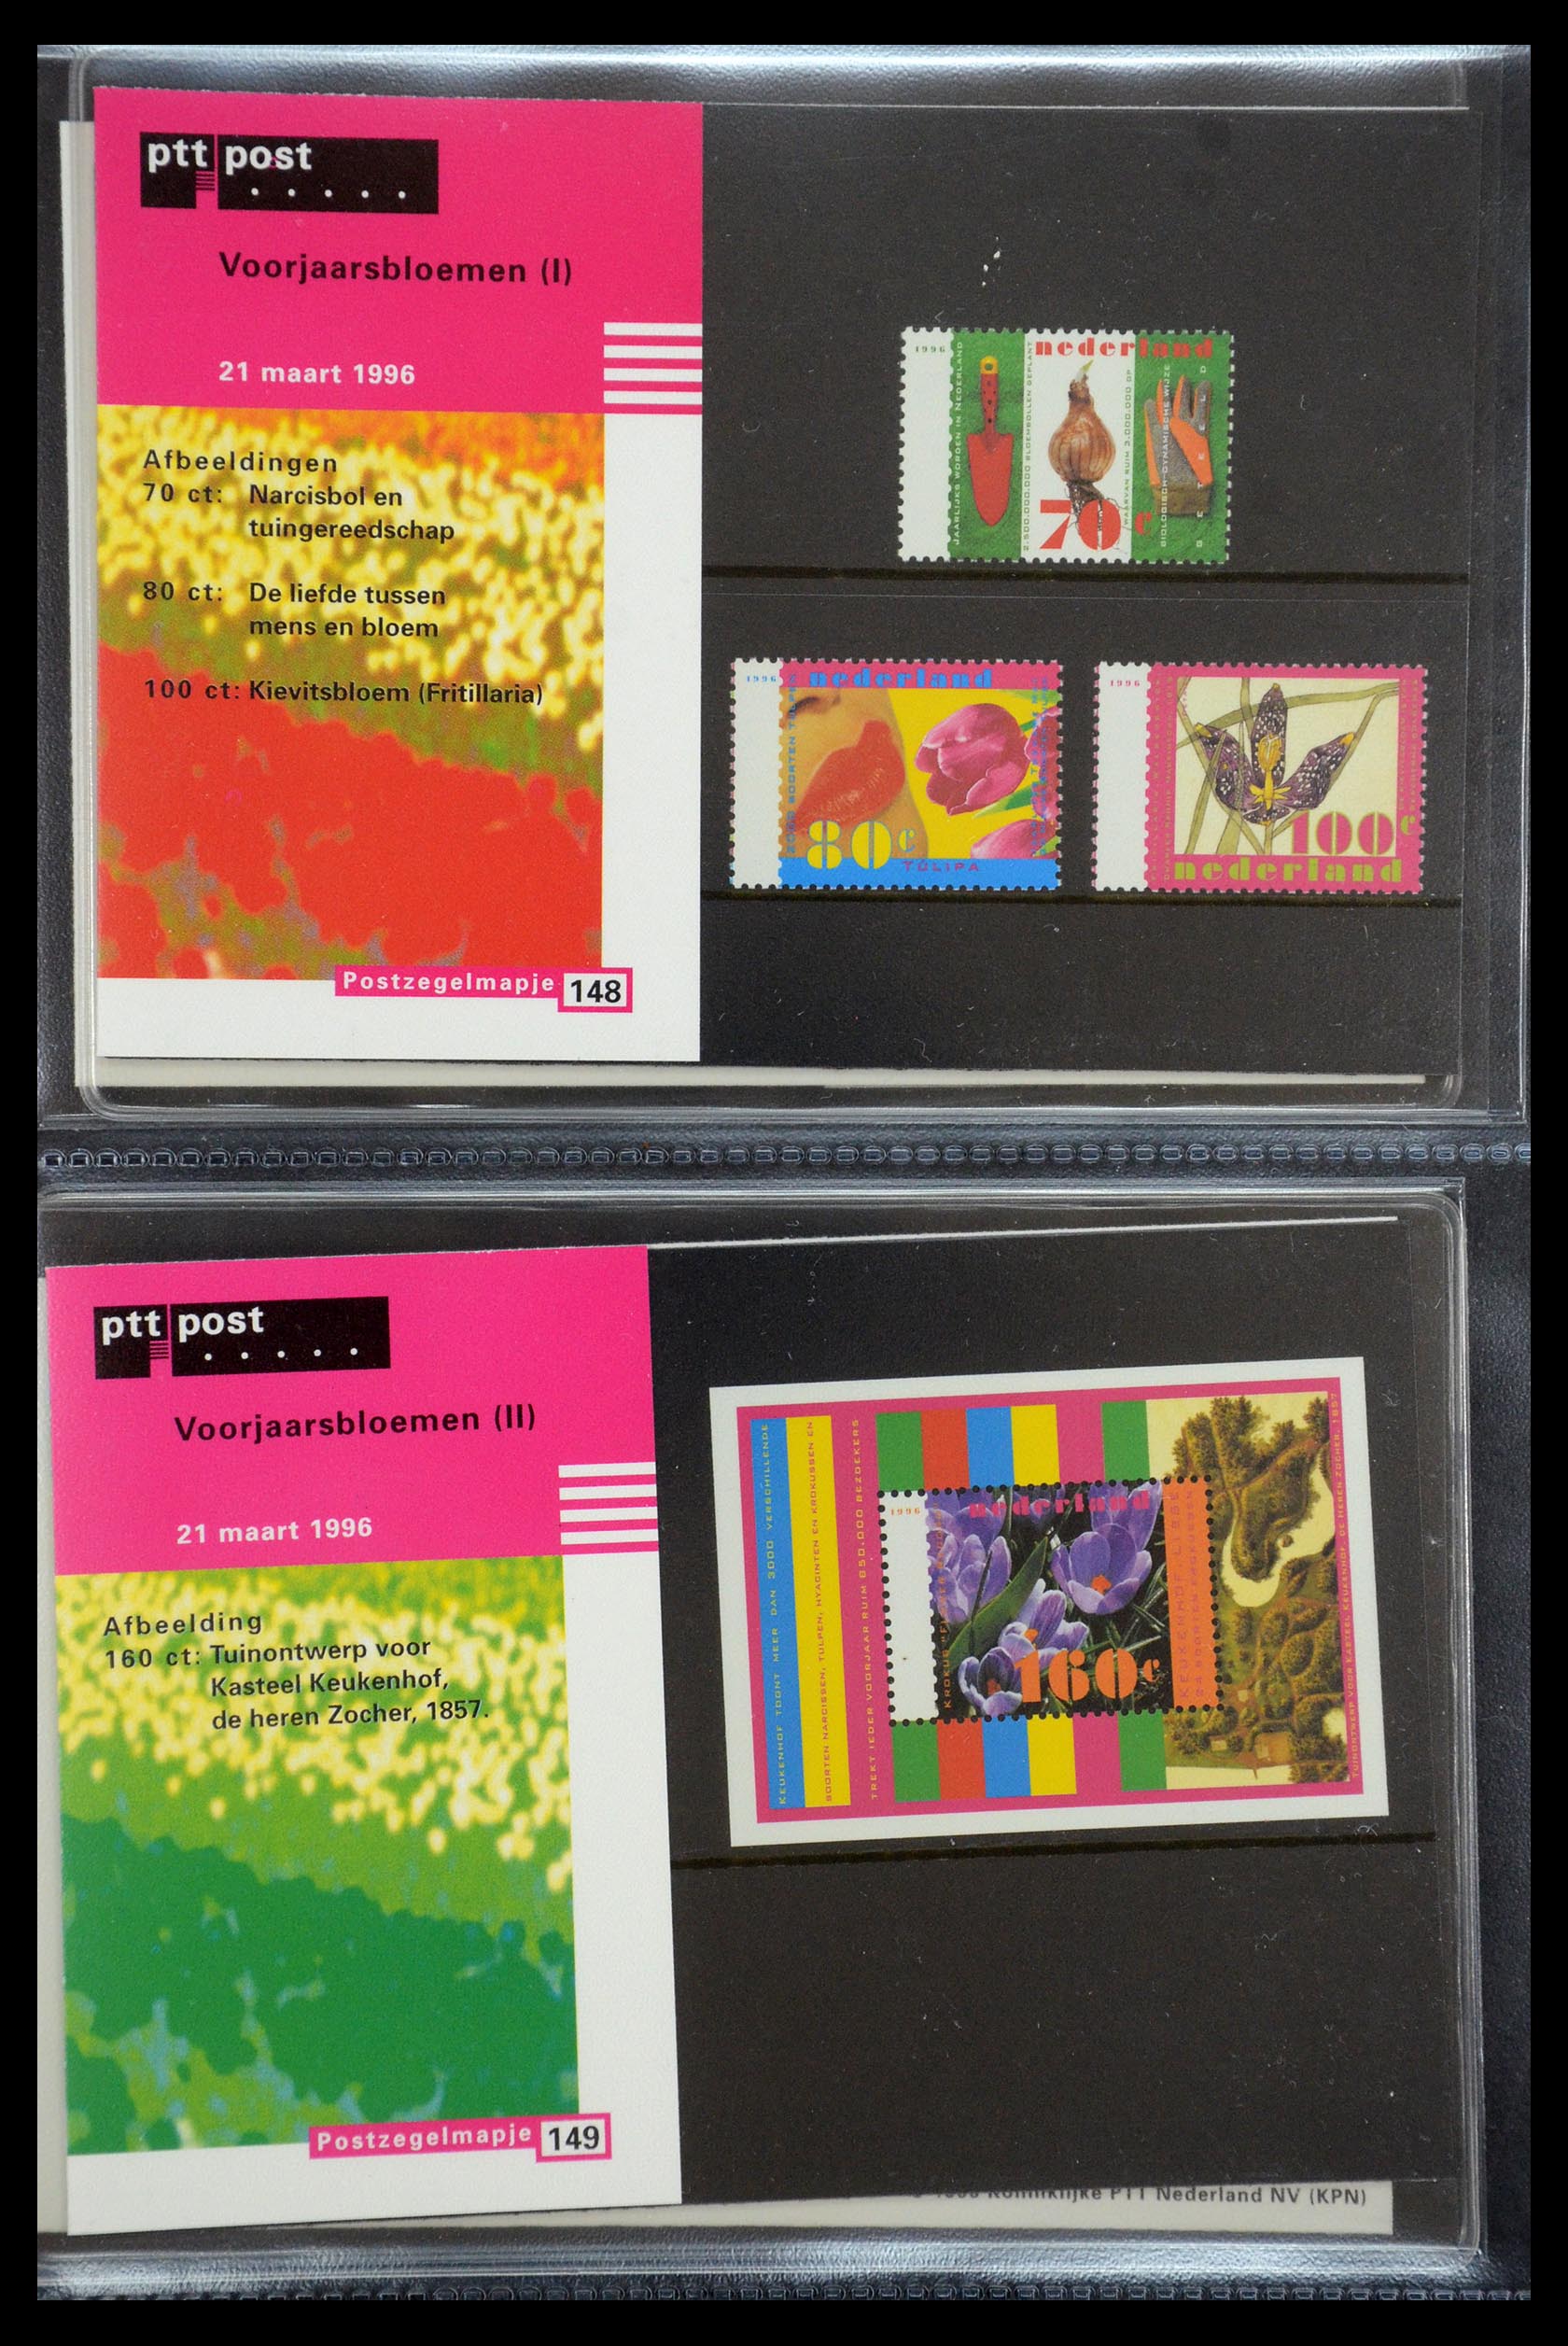 35187 076 - Stamp Collection 35187 Netherlands PTT presentation packs 1982-2019!